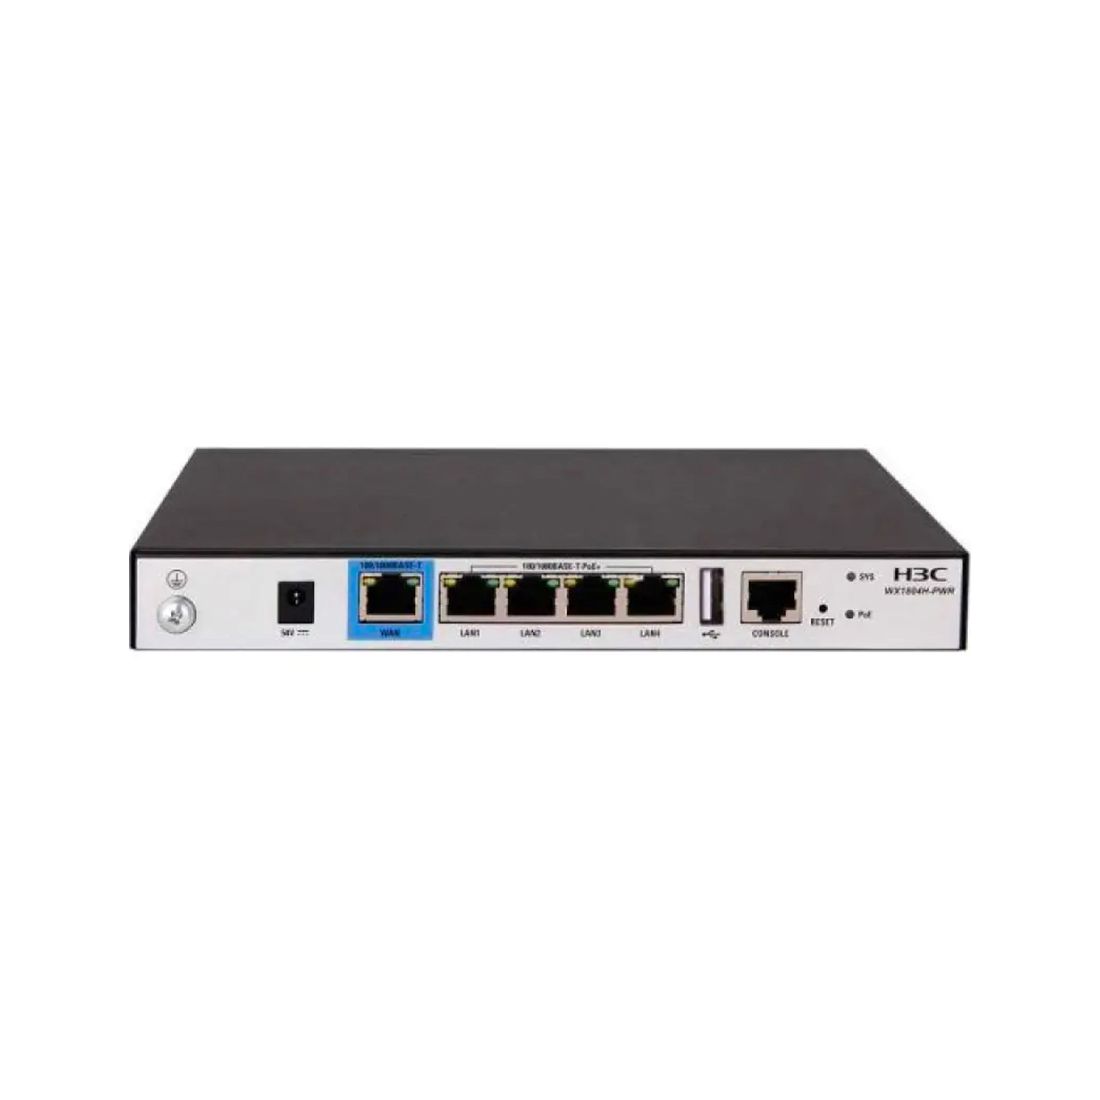 Контроллер беспроводного доступа, H3C, EWP-WX1804H-PWR, 4 порта LAN 10/100/1000M, 1 порт WAN 10/100/